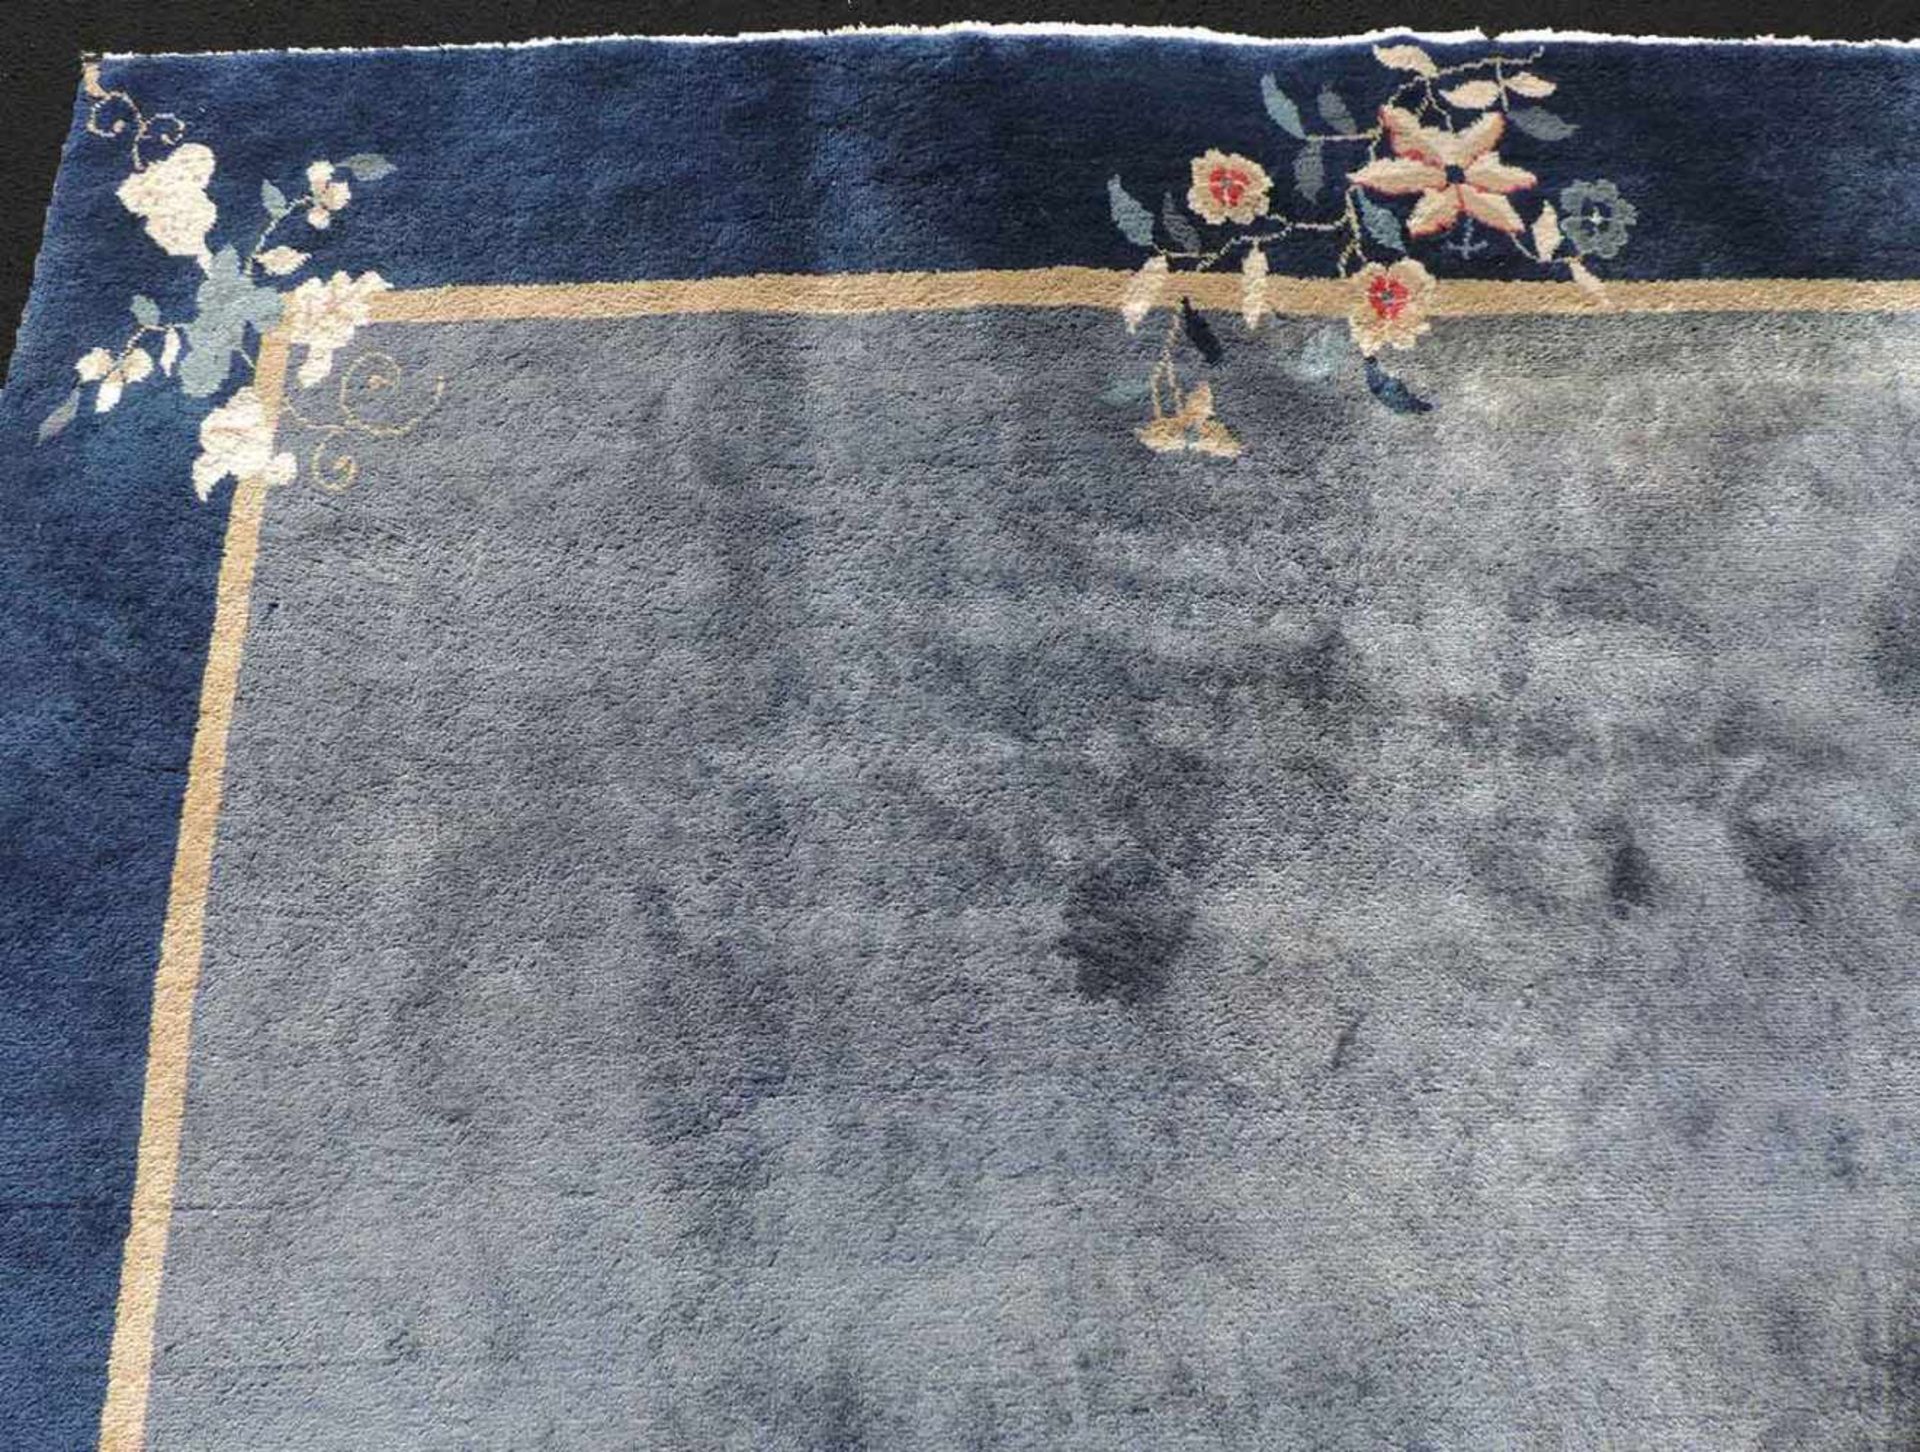 Peking Teppich. China. Antik. Um 1920 361 cm x 267 cm. Handgeknüpft. Mancesterwolle auf Baumwolle. - Bild 6 aus 8